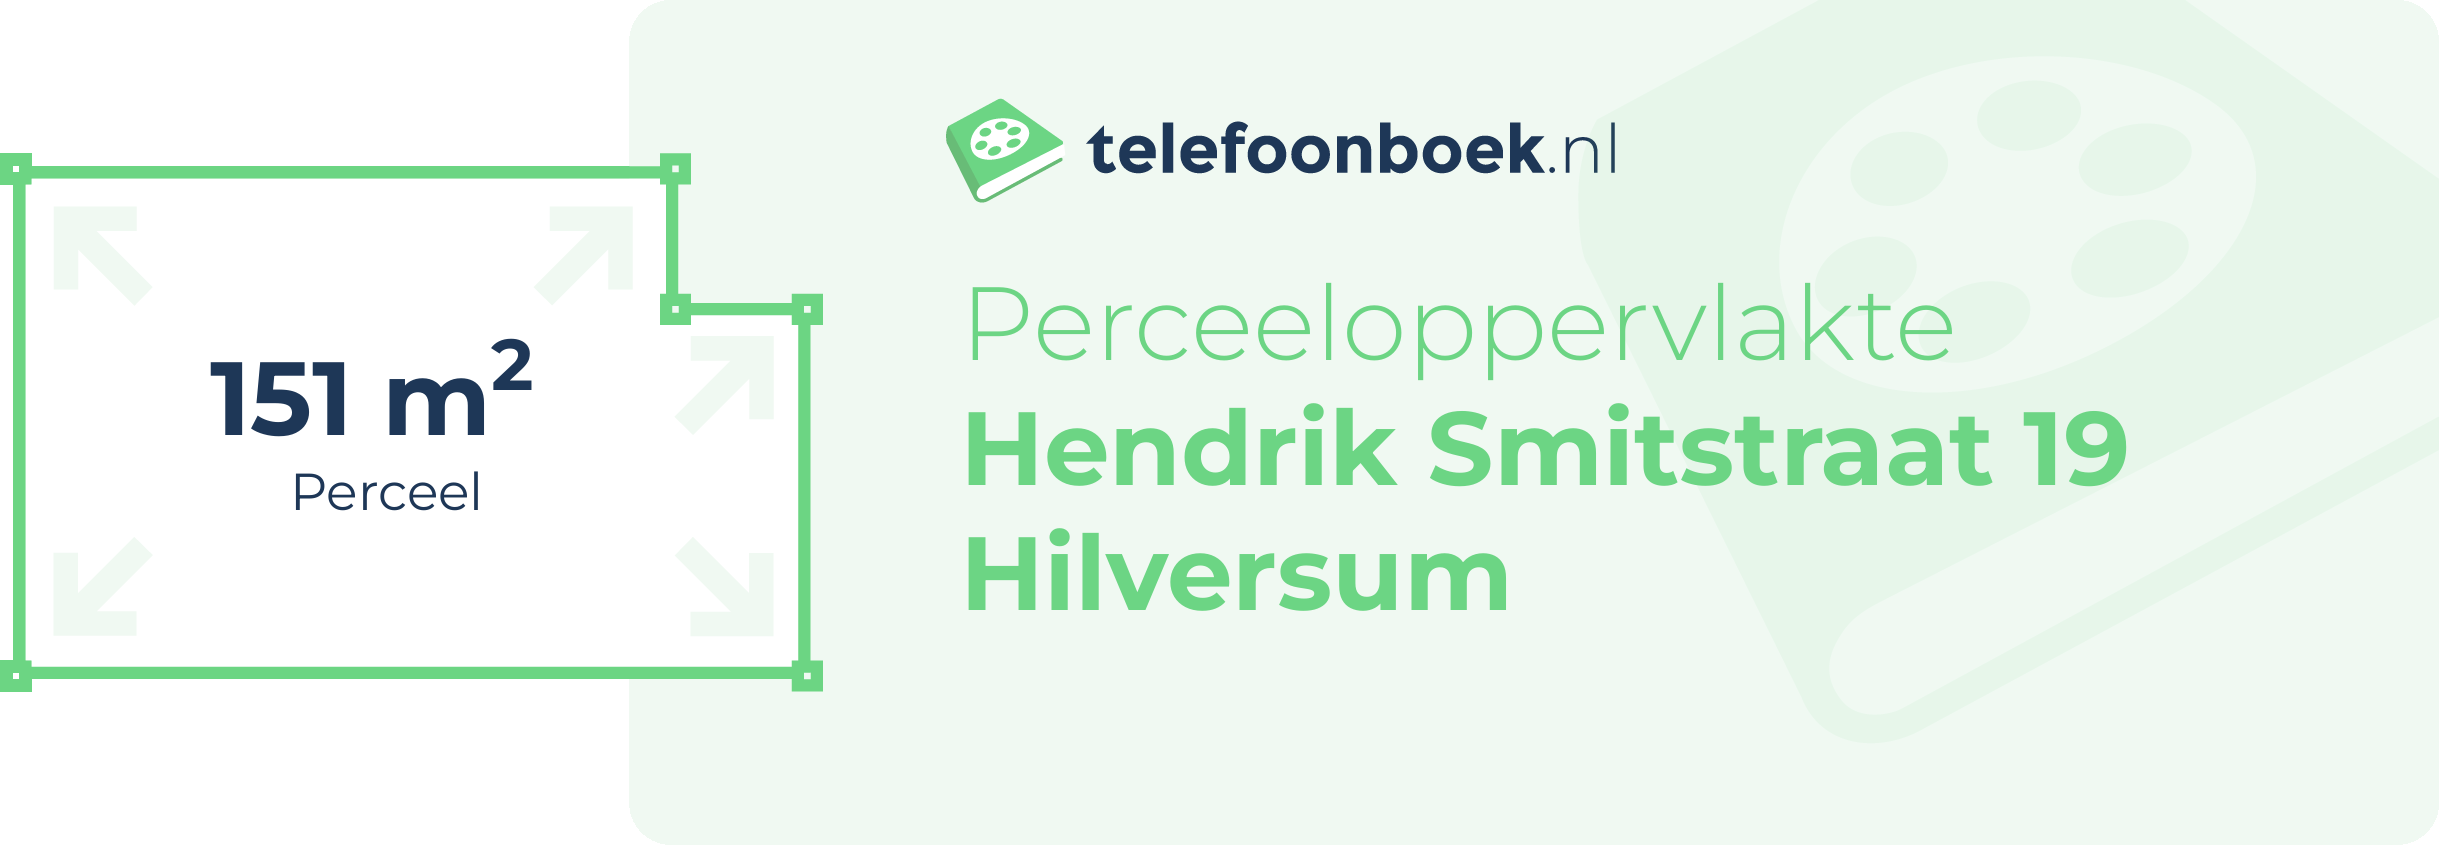 Perceeloppervlakte Hendrik Smitstraat 19 Hilversum